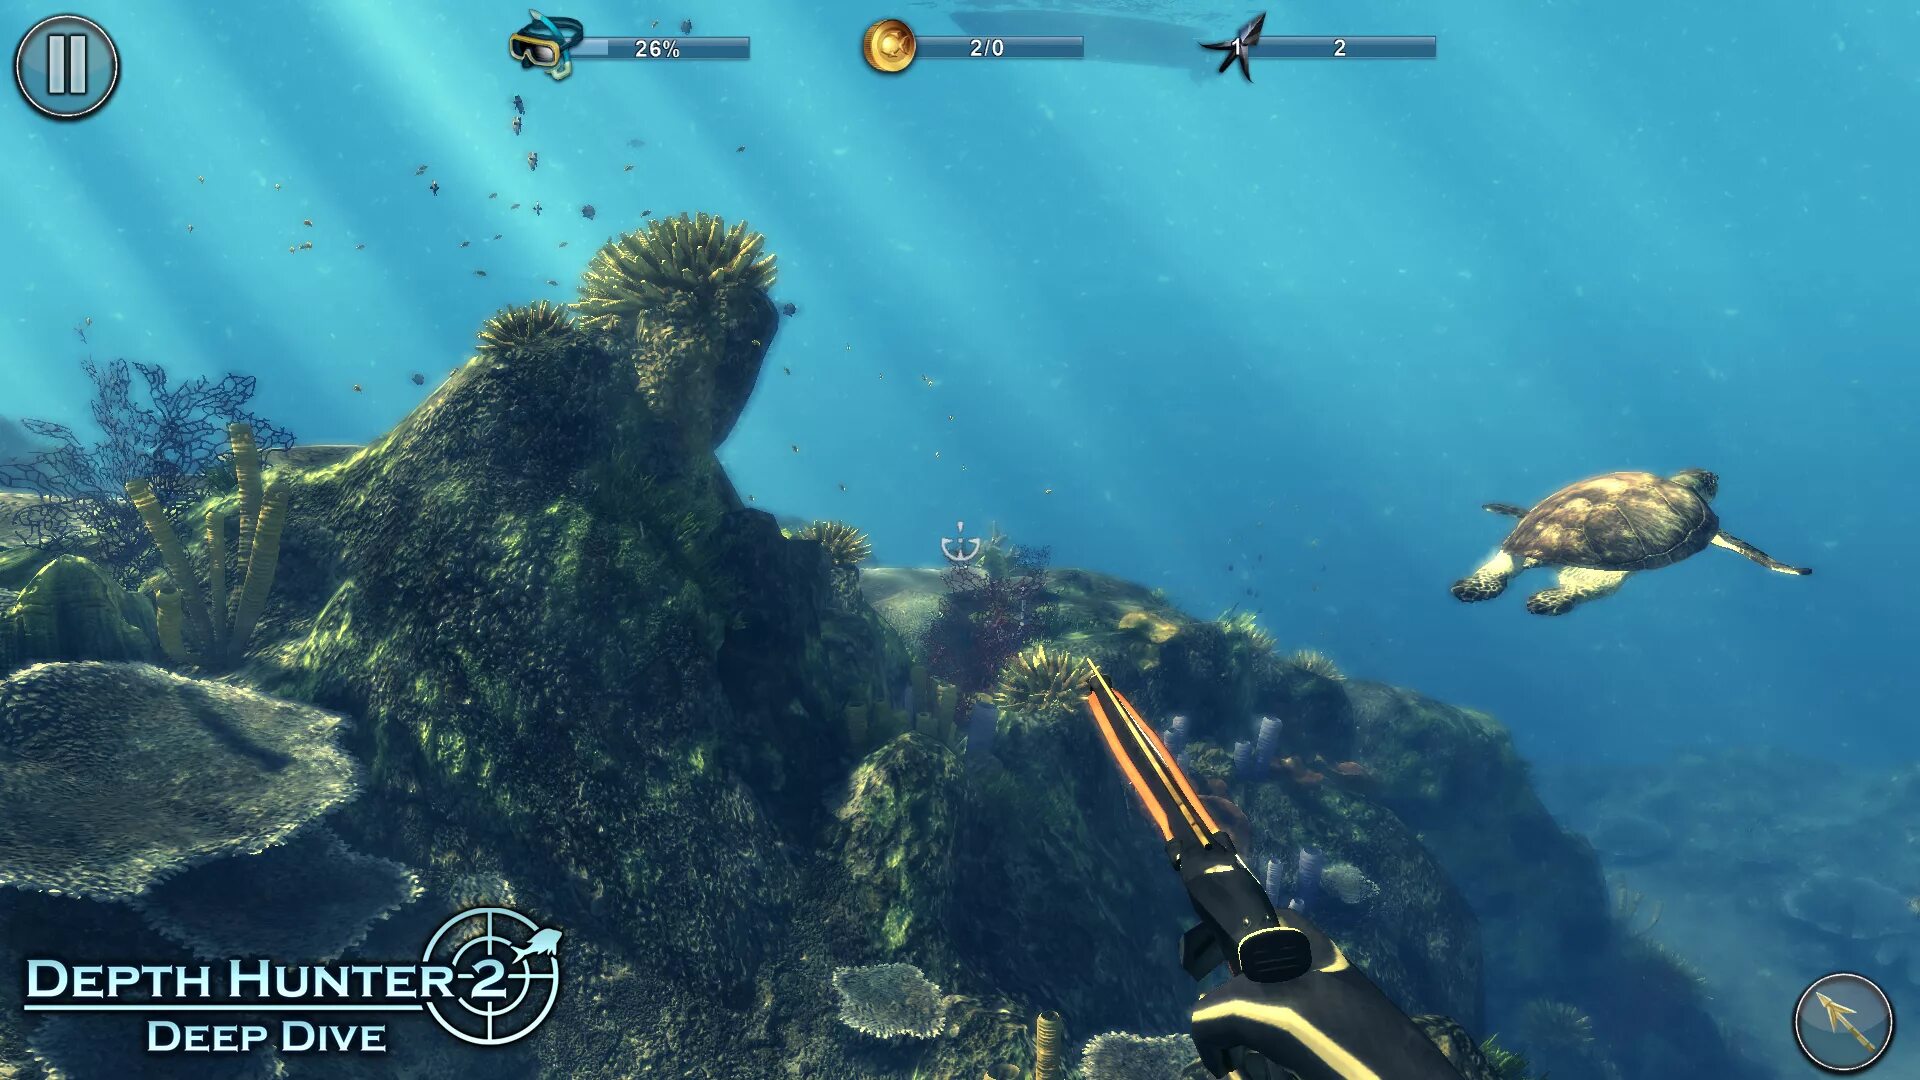 Deep Hunter игра. Depth Hunter 2: Deep Dive Скриншот. Подводная охота игра. Игры про подводную охоту. Дип хантер